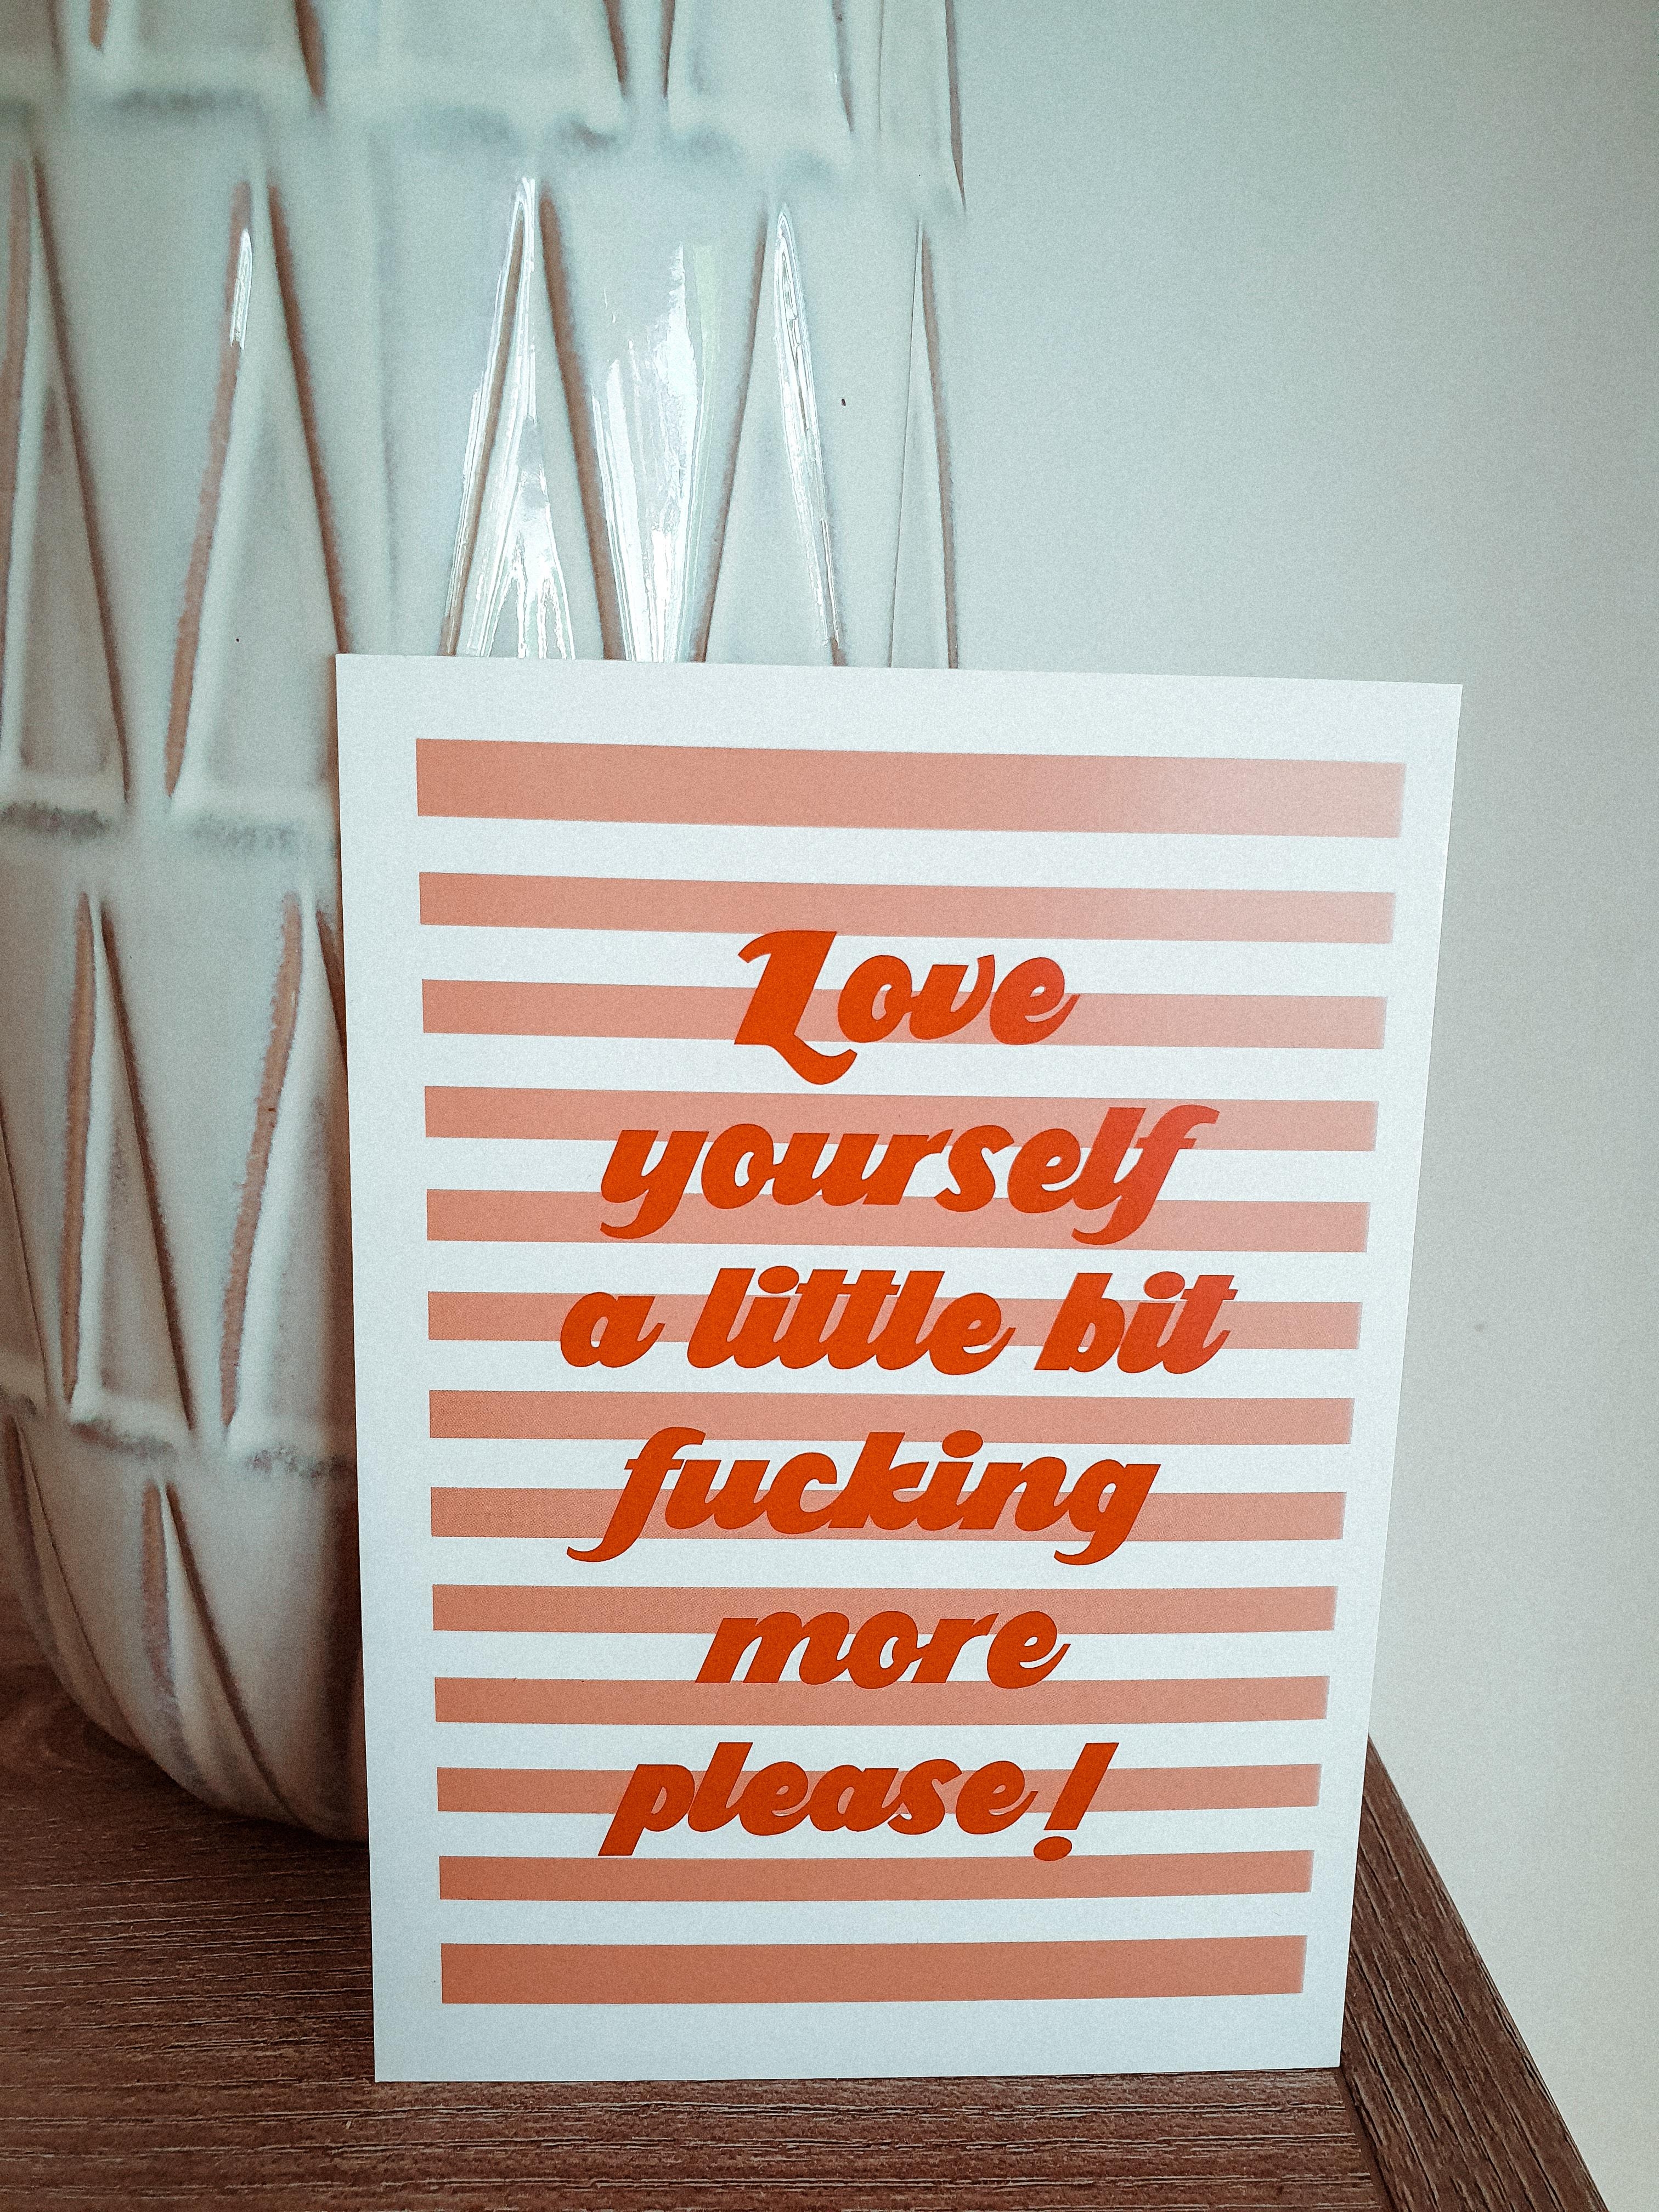 ☝🏼 just a quick reminder

#selflove #postcard #dekoideen